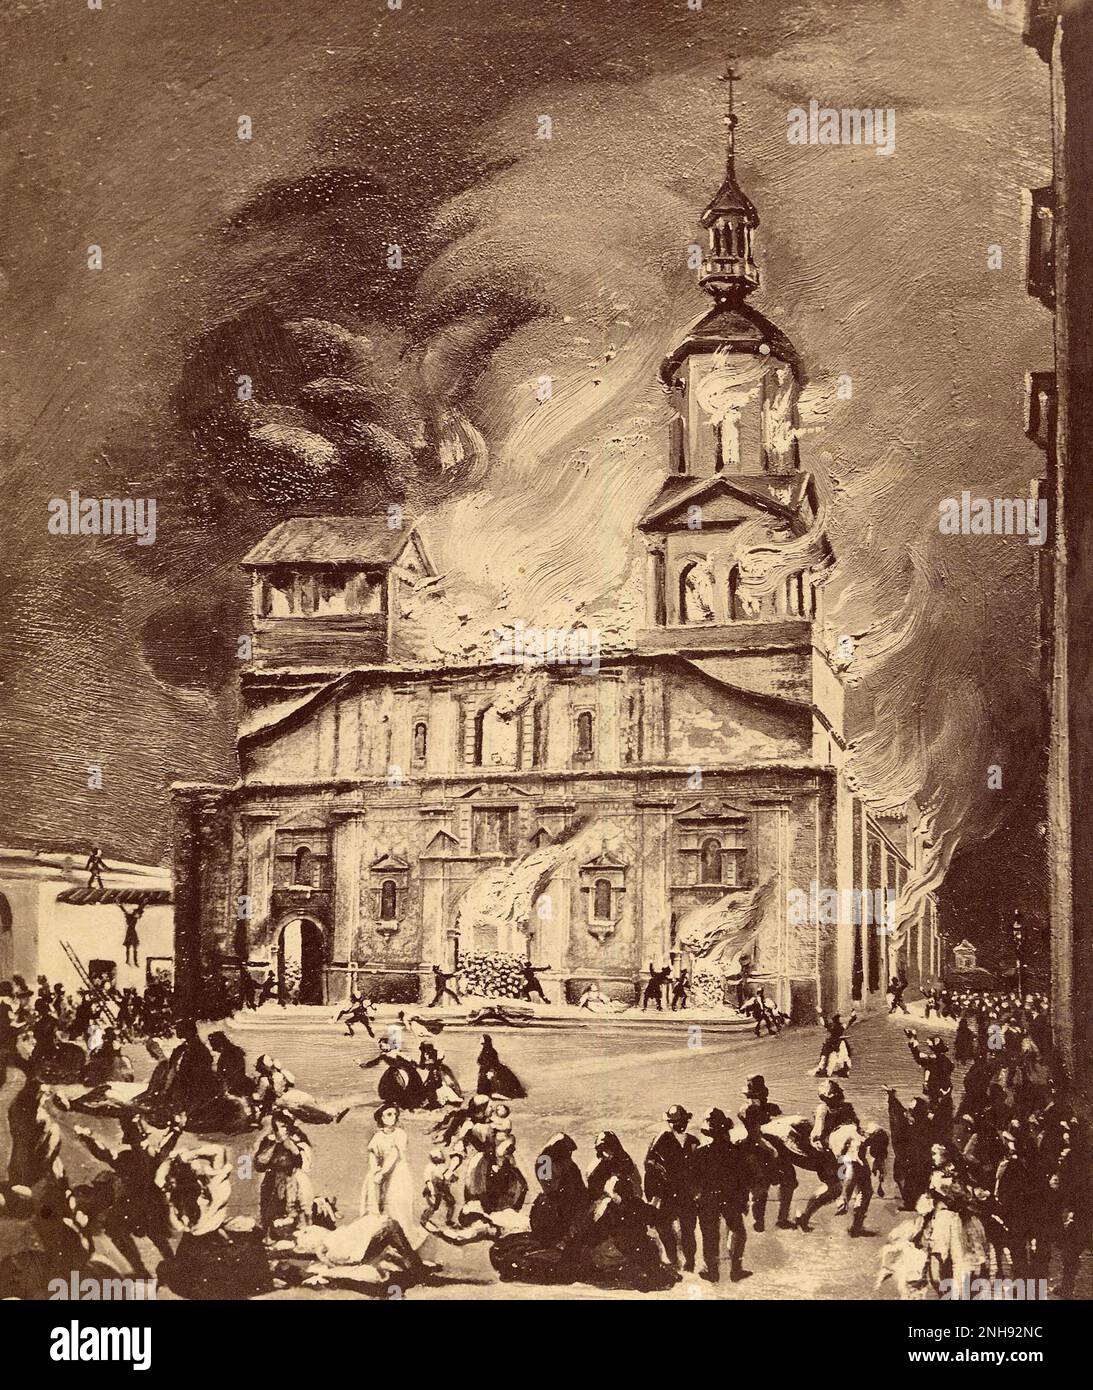 Die Kirche der Gesellschaft feuert am 8. Dezember 1863 in Santiago, Chile. Zwischen 2.000 und 3.000 Menschen waren in der Kirche gefangen und starben, einer der größten und tödlichsten versehentlichen Gebäudebrände der Geschichte. Stockfoto